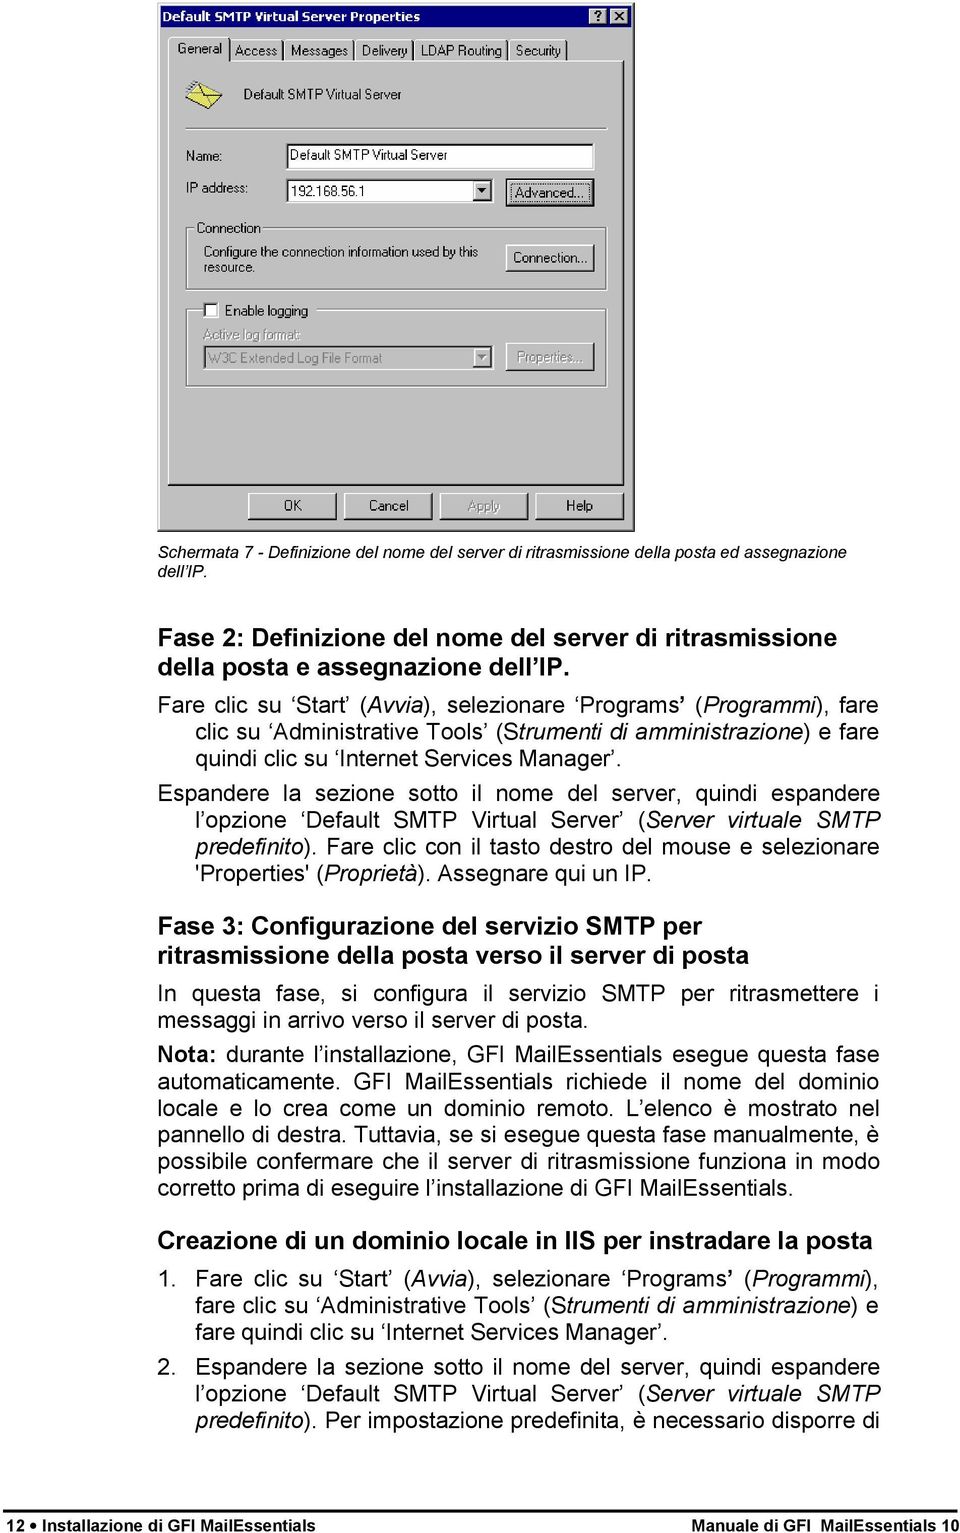 Espandere la sezione sotto il nome del server, quindi espandere l opzione Default SMTP Virtual Server (Server virtuale SMTP predefinito).